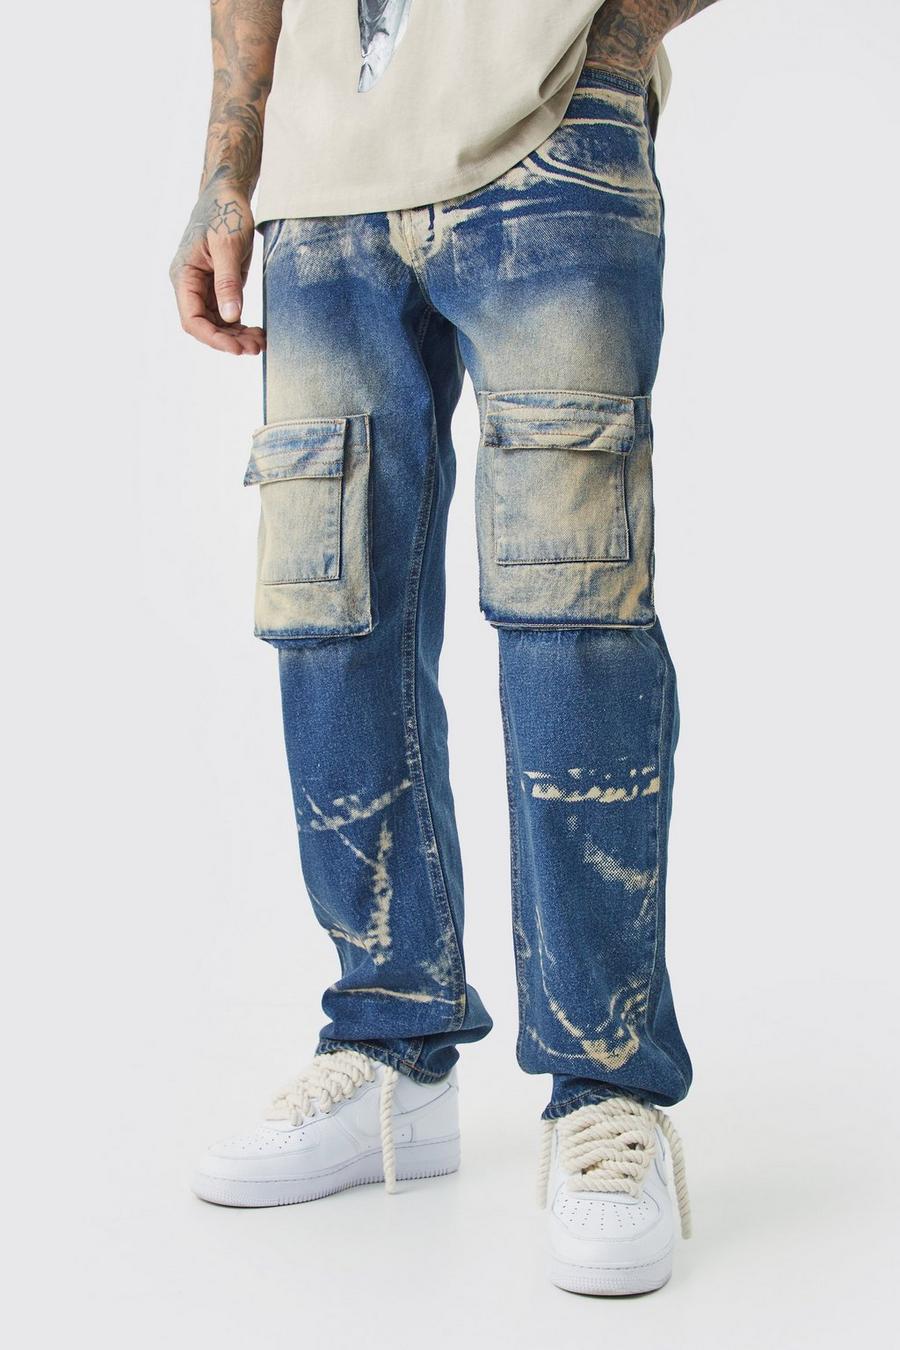 Tall lockere Jeans mit Acid-Waschung und X-Ray Print, Antique wash